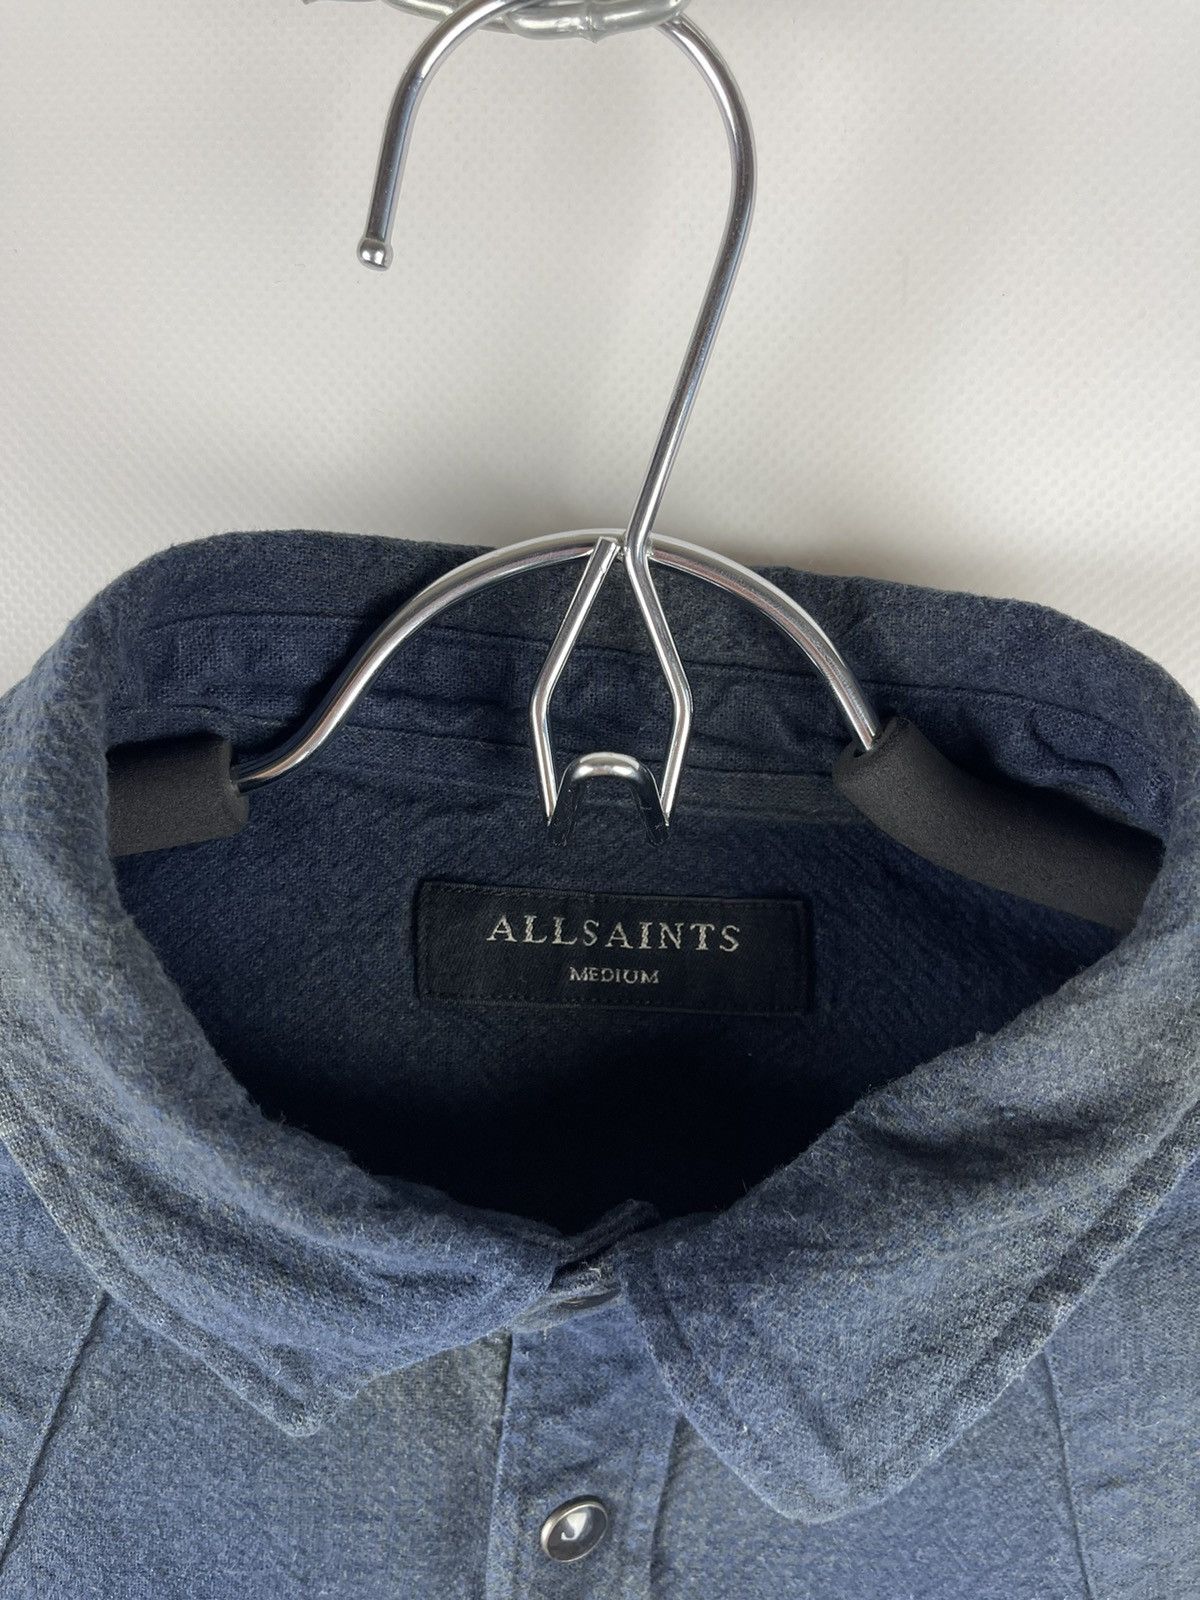 Allsaints Allsaints Bigfork ls shirt flannel plaid travis Scott style Size US M / EU 48-50 / 2 - 7 Thumbnail